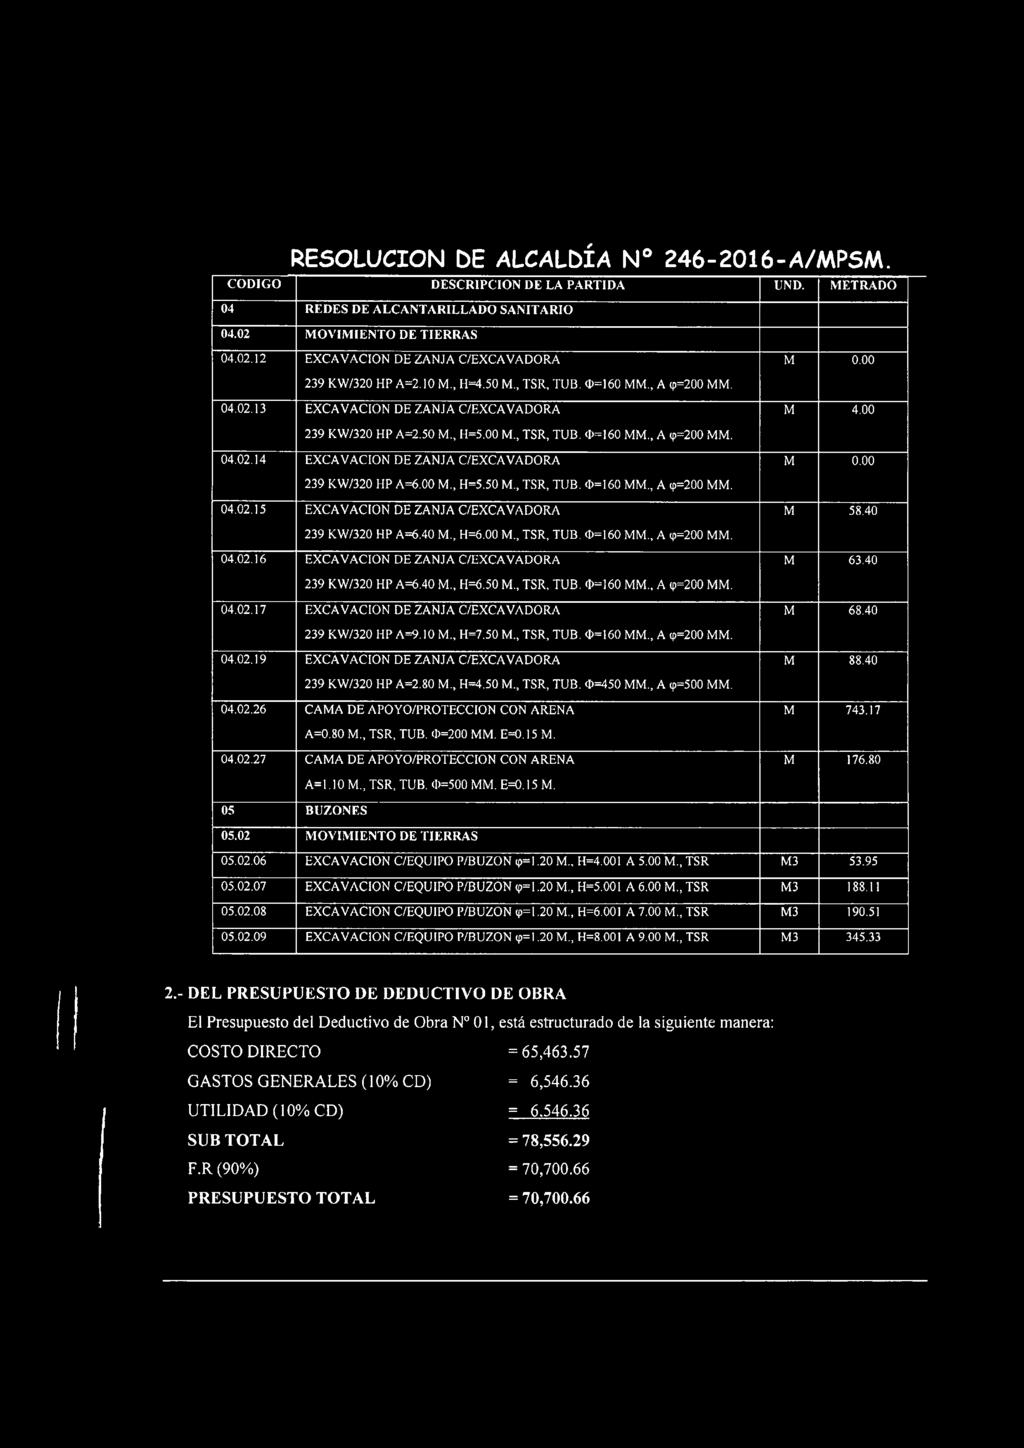 13 EXCAVACION DE ZANJA C/EXCAVADORA 239 KW/320 HP A=2.50 M., H=5.00 M., TSR, TUB. 0=160 MM.